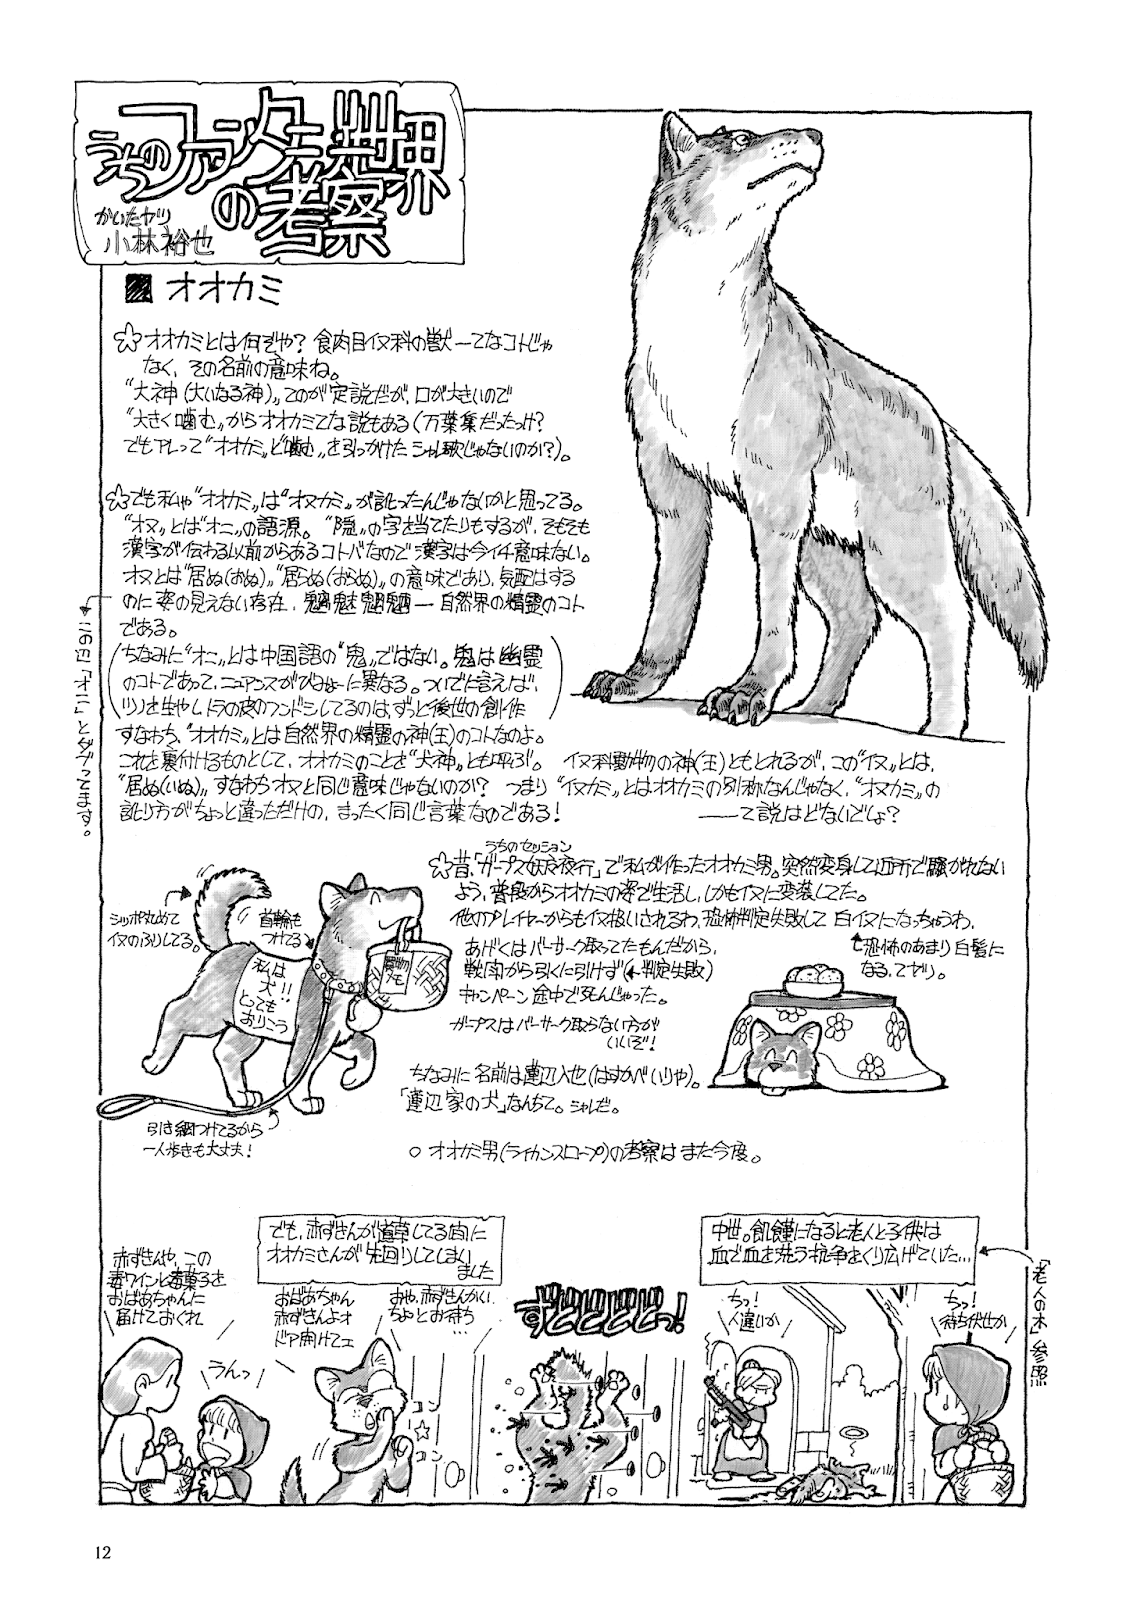 第67回 うちのファンタジー世界の考察 オオカミ パンタポルタ